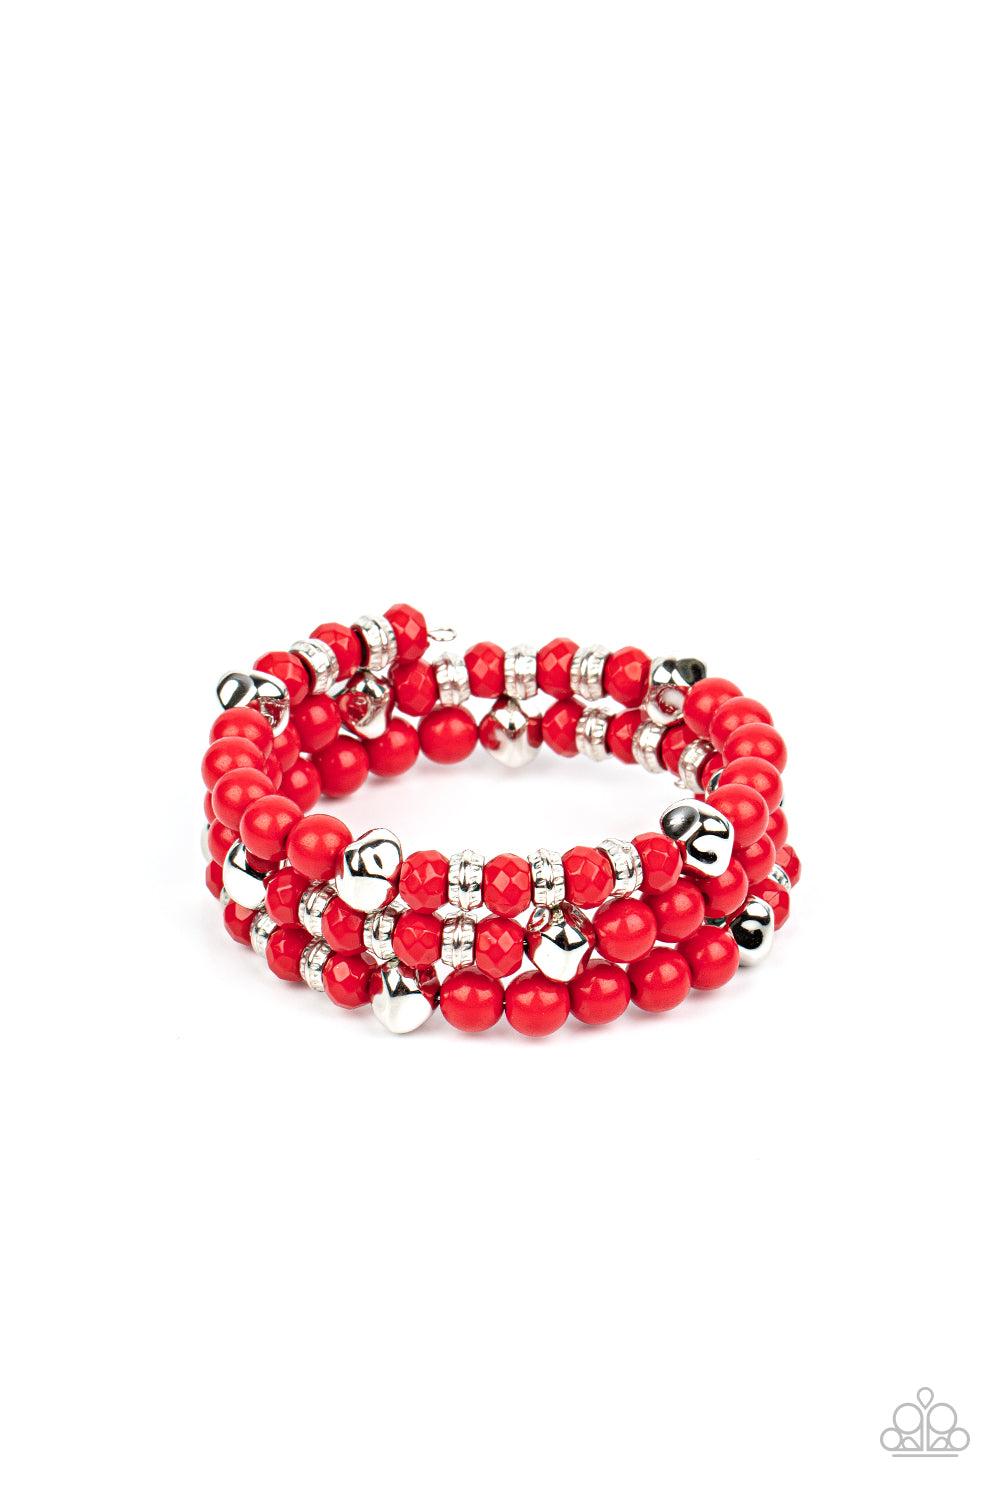 Paparazzi Bracelets - Vibrant Verve - Red